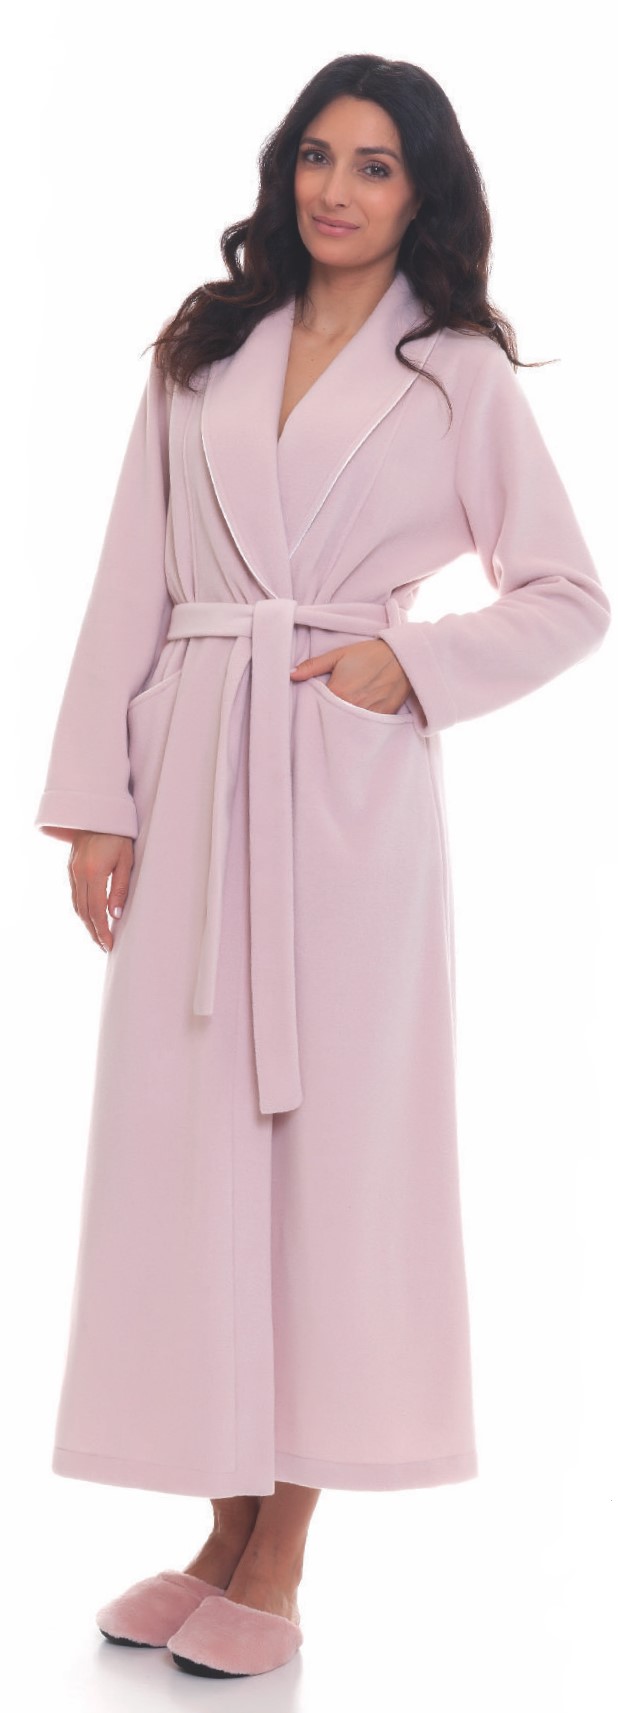 Vestaglia donna invernale sciallata pile cordoncino - Fleece winter woman's  dressing gown